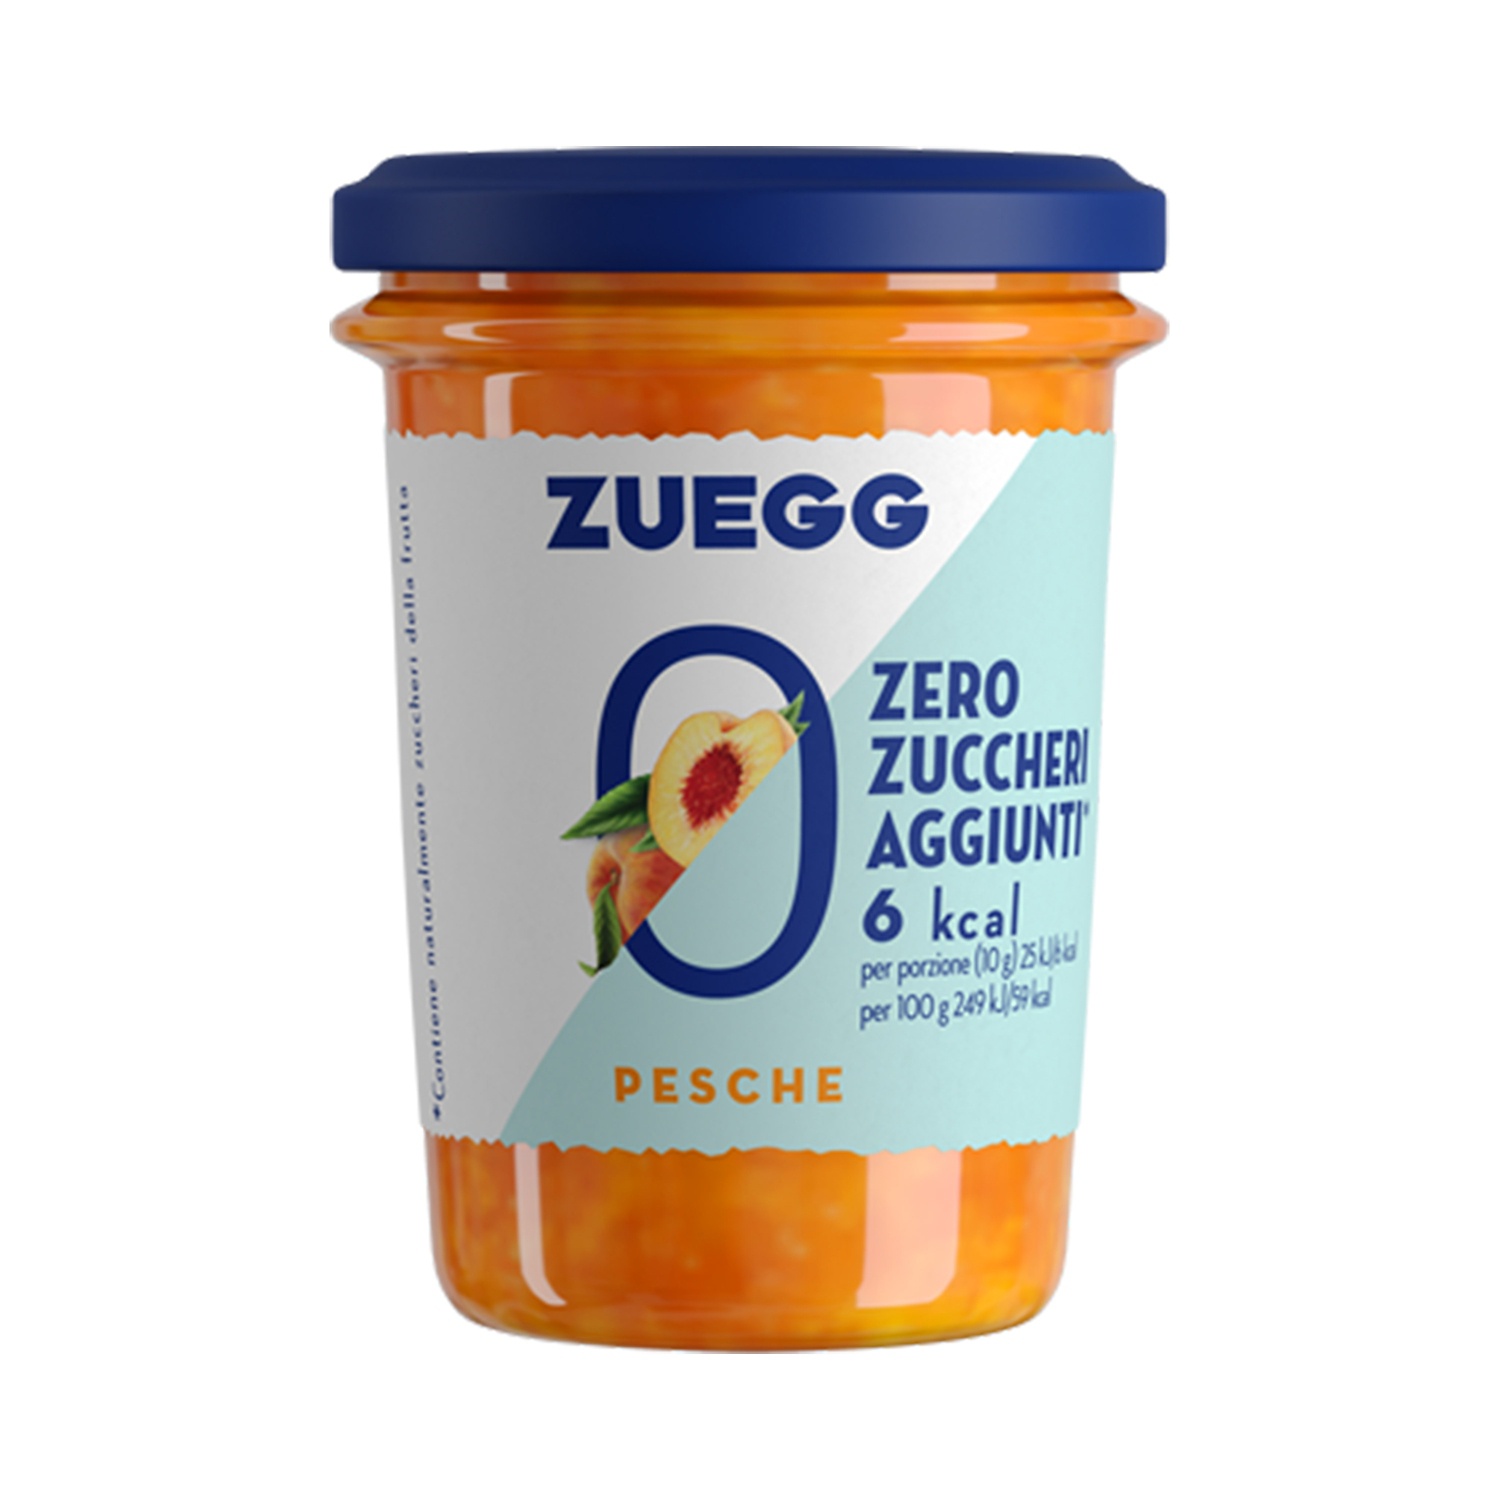 ZUEGG Confettura Zero Zuccheri aggiunti alle pesche